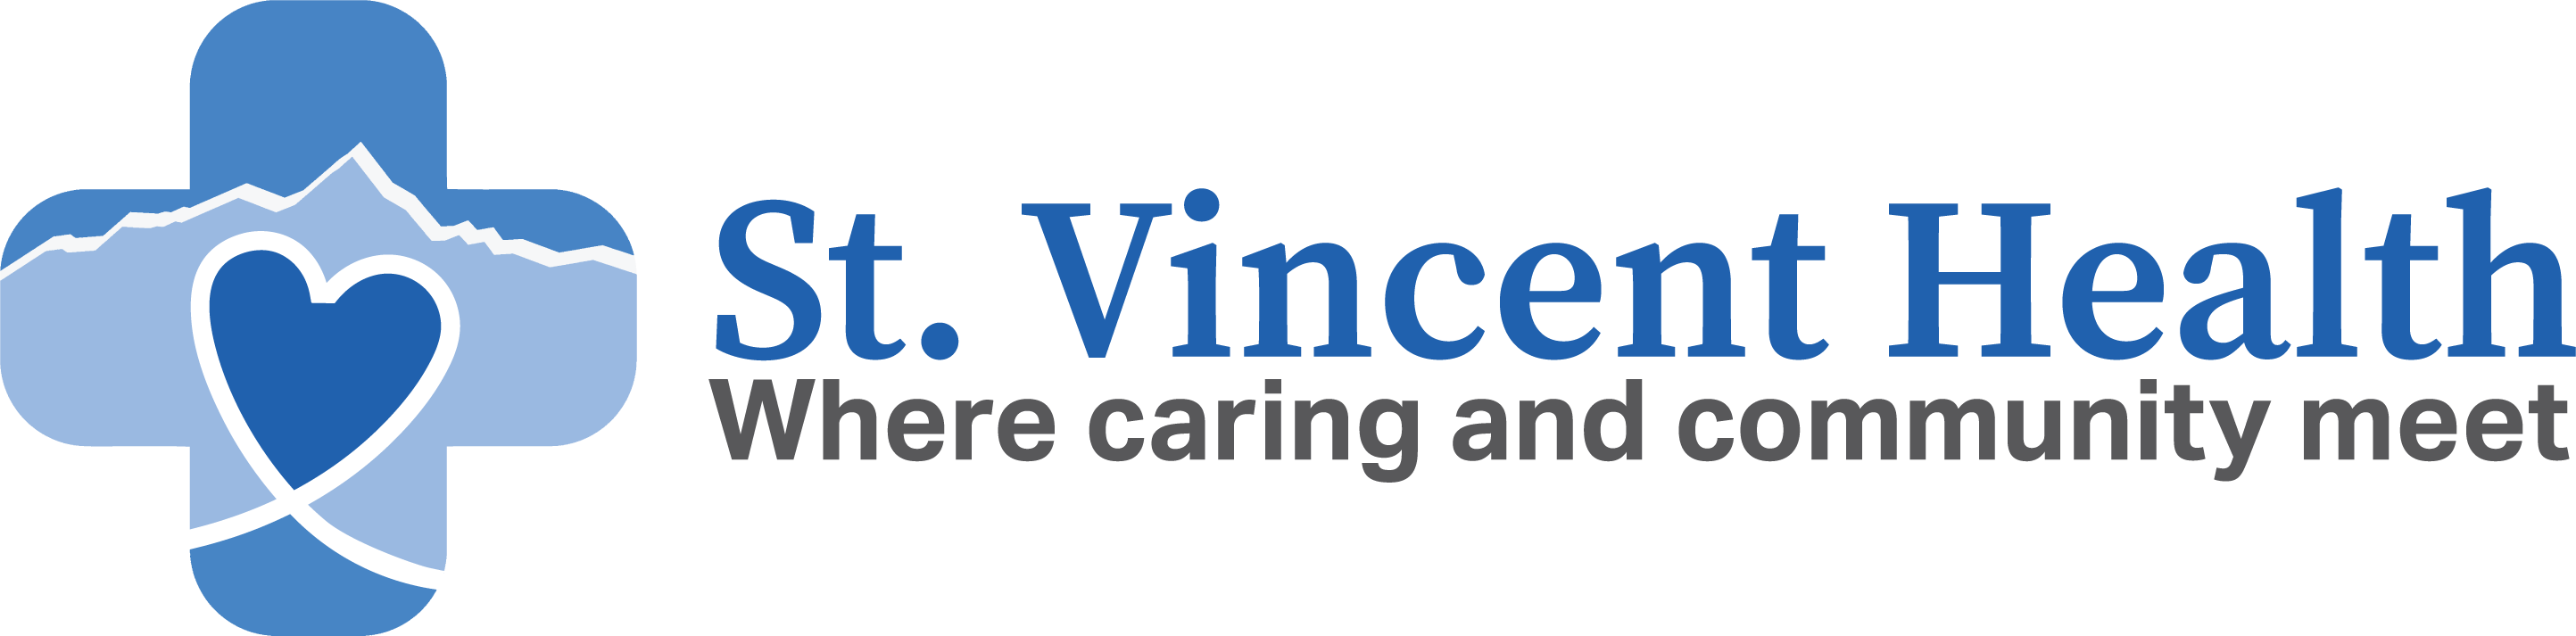 Careers at St. Vincent Health - St. Vincent Health